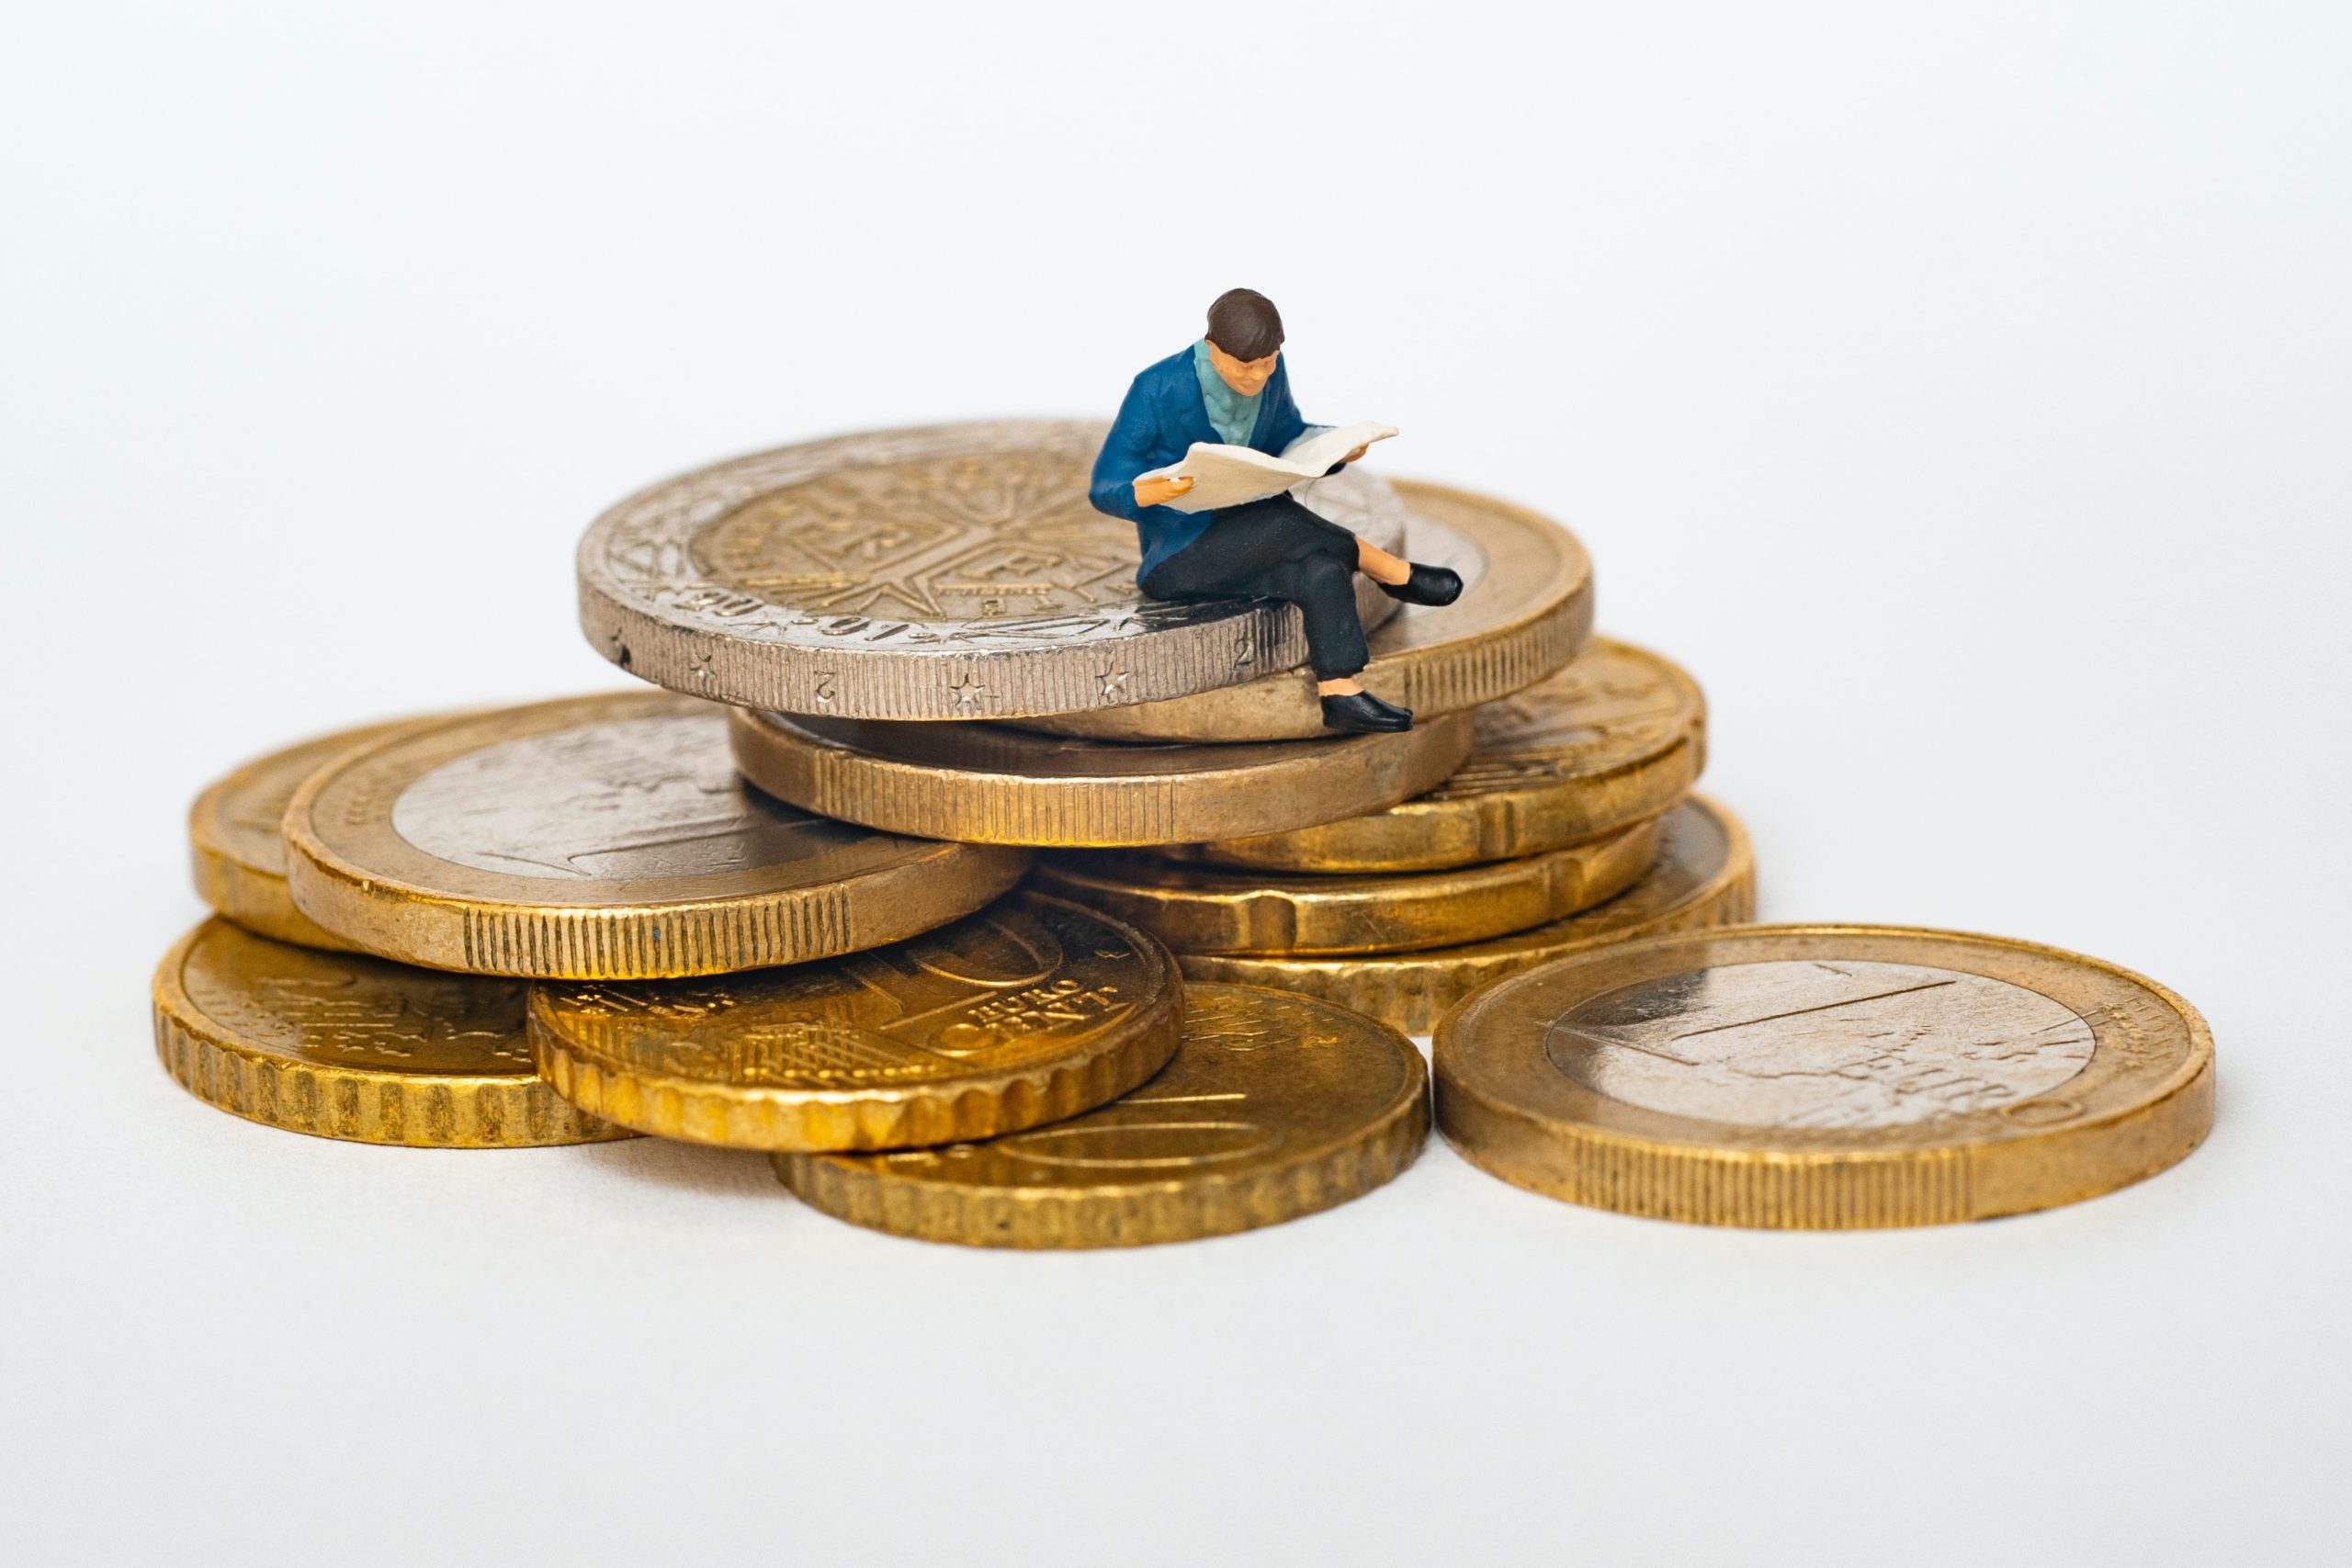 Miniature d'homme lisant sur une pile de pièces d'euro.